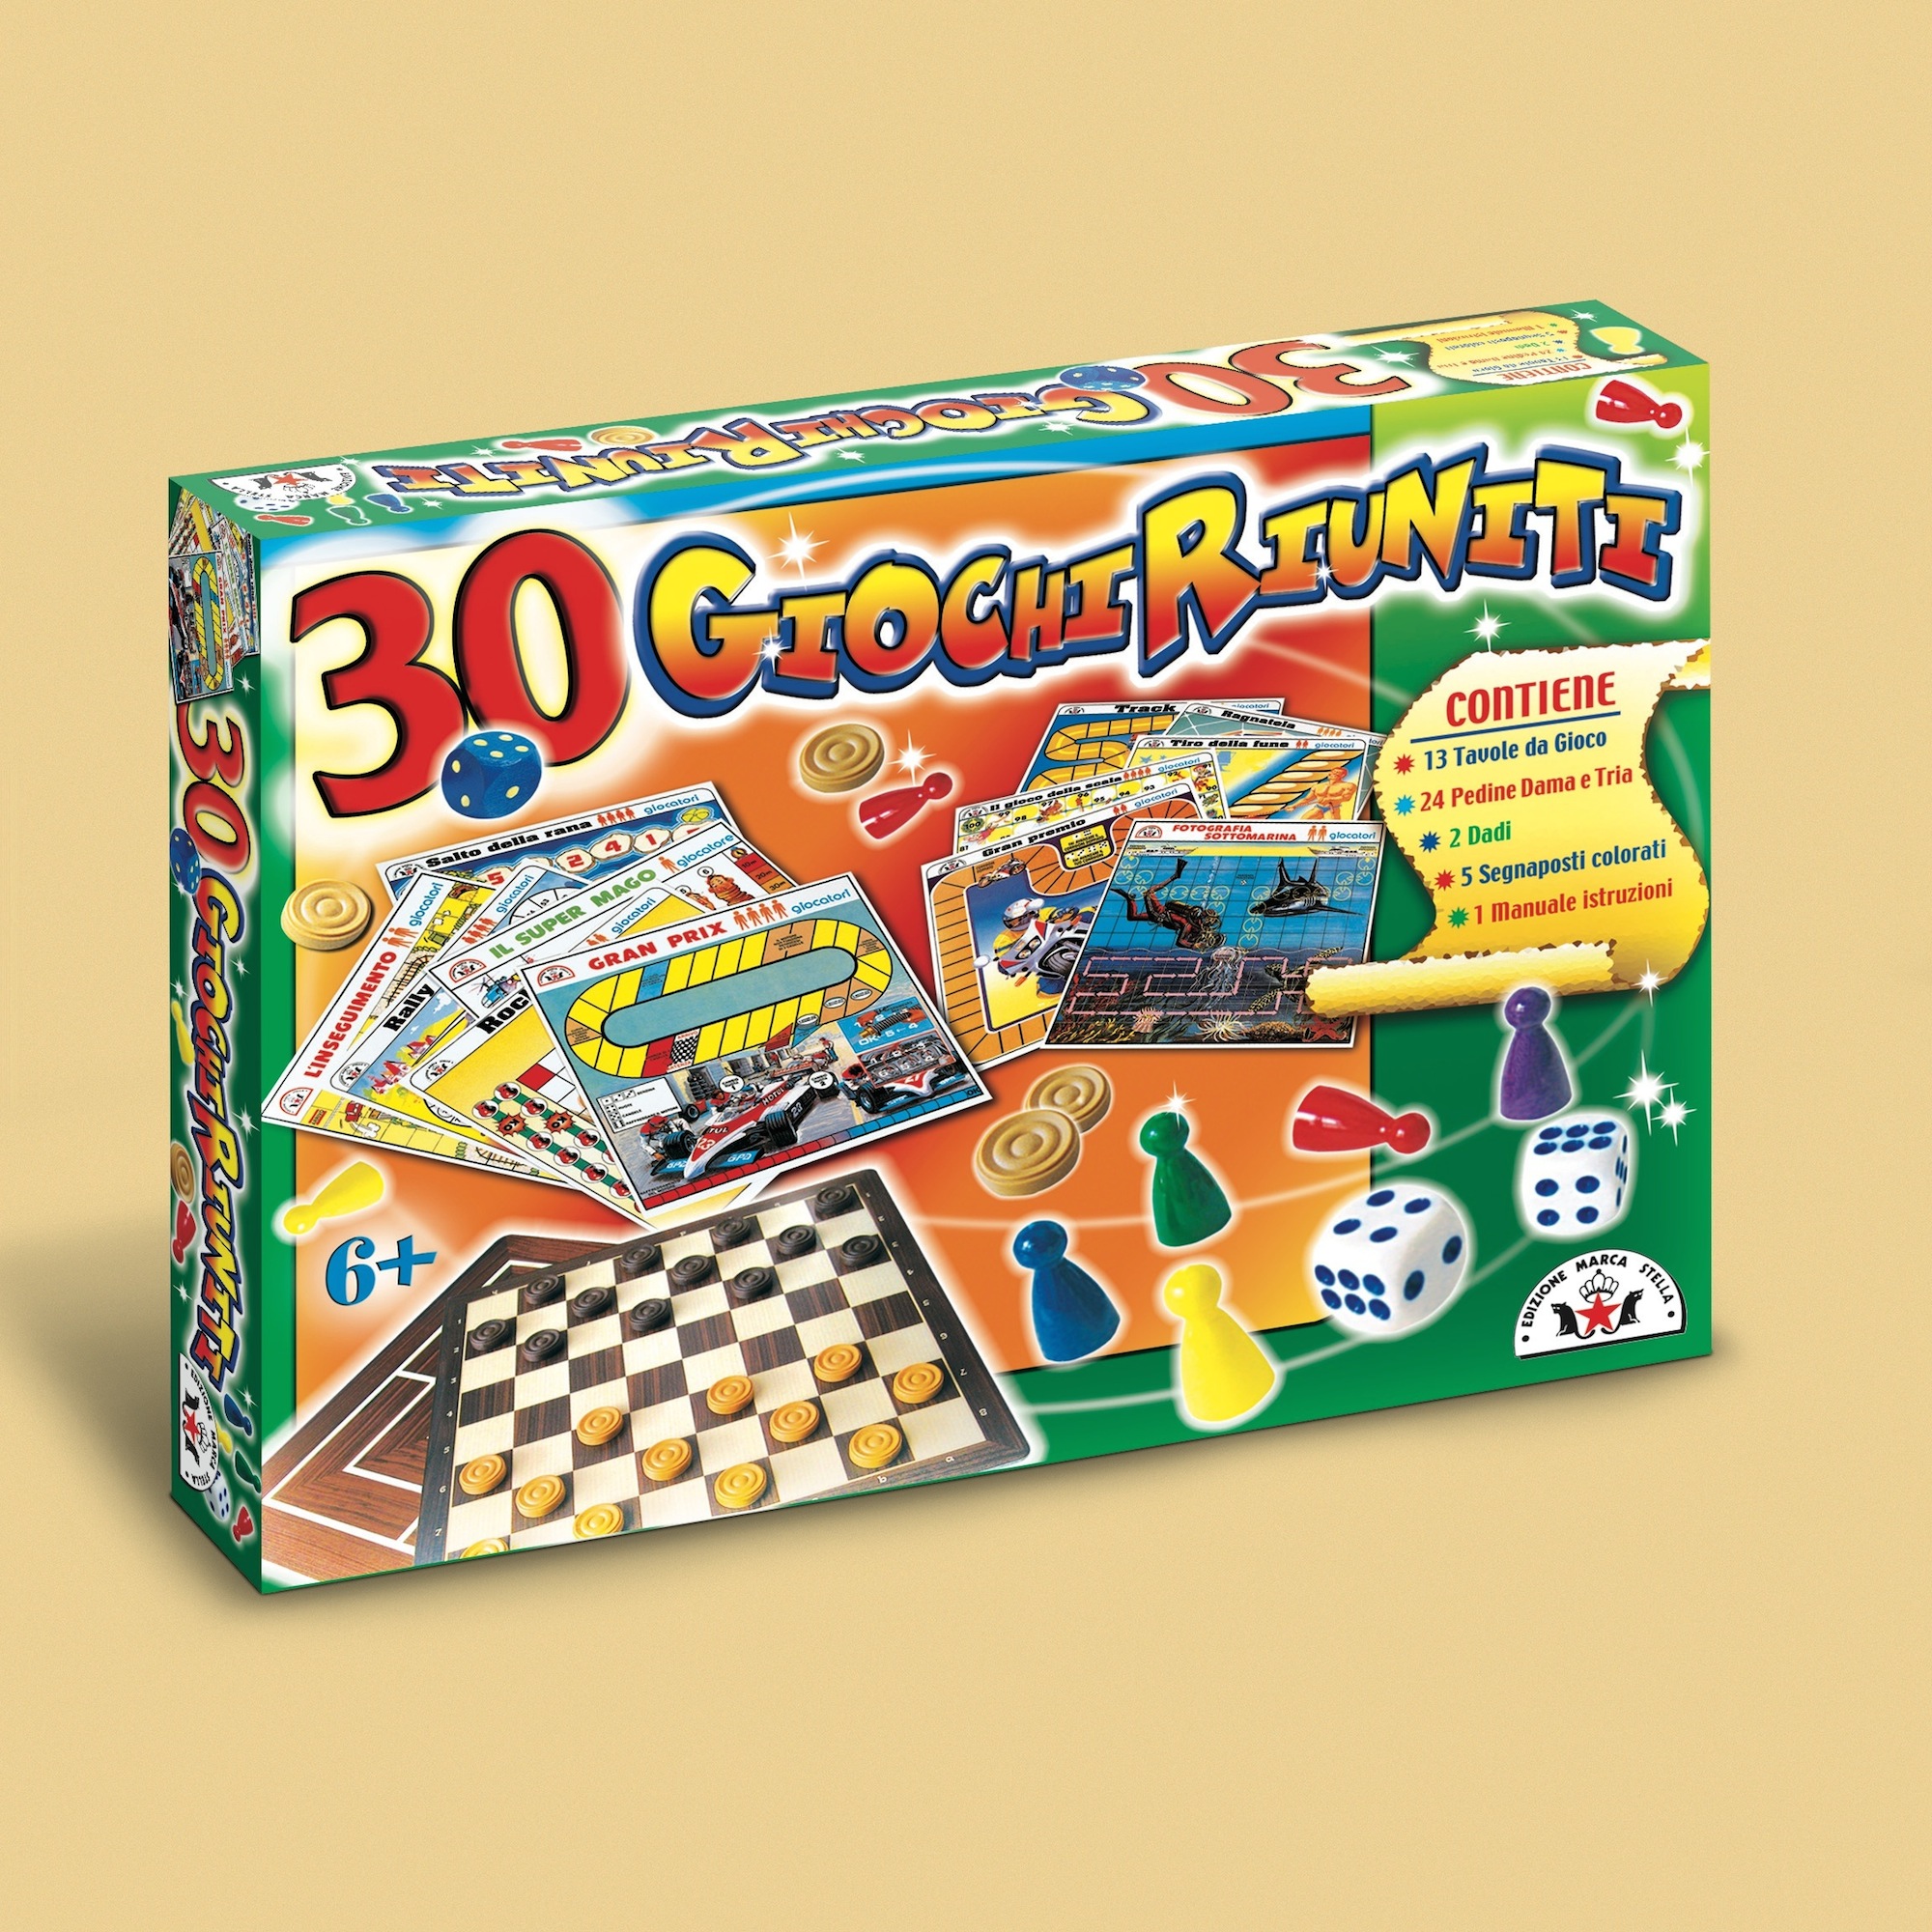 30 GIOCHI RIUNITI - Toys Center